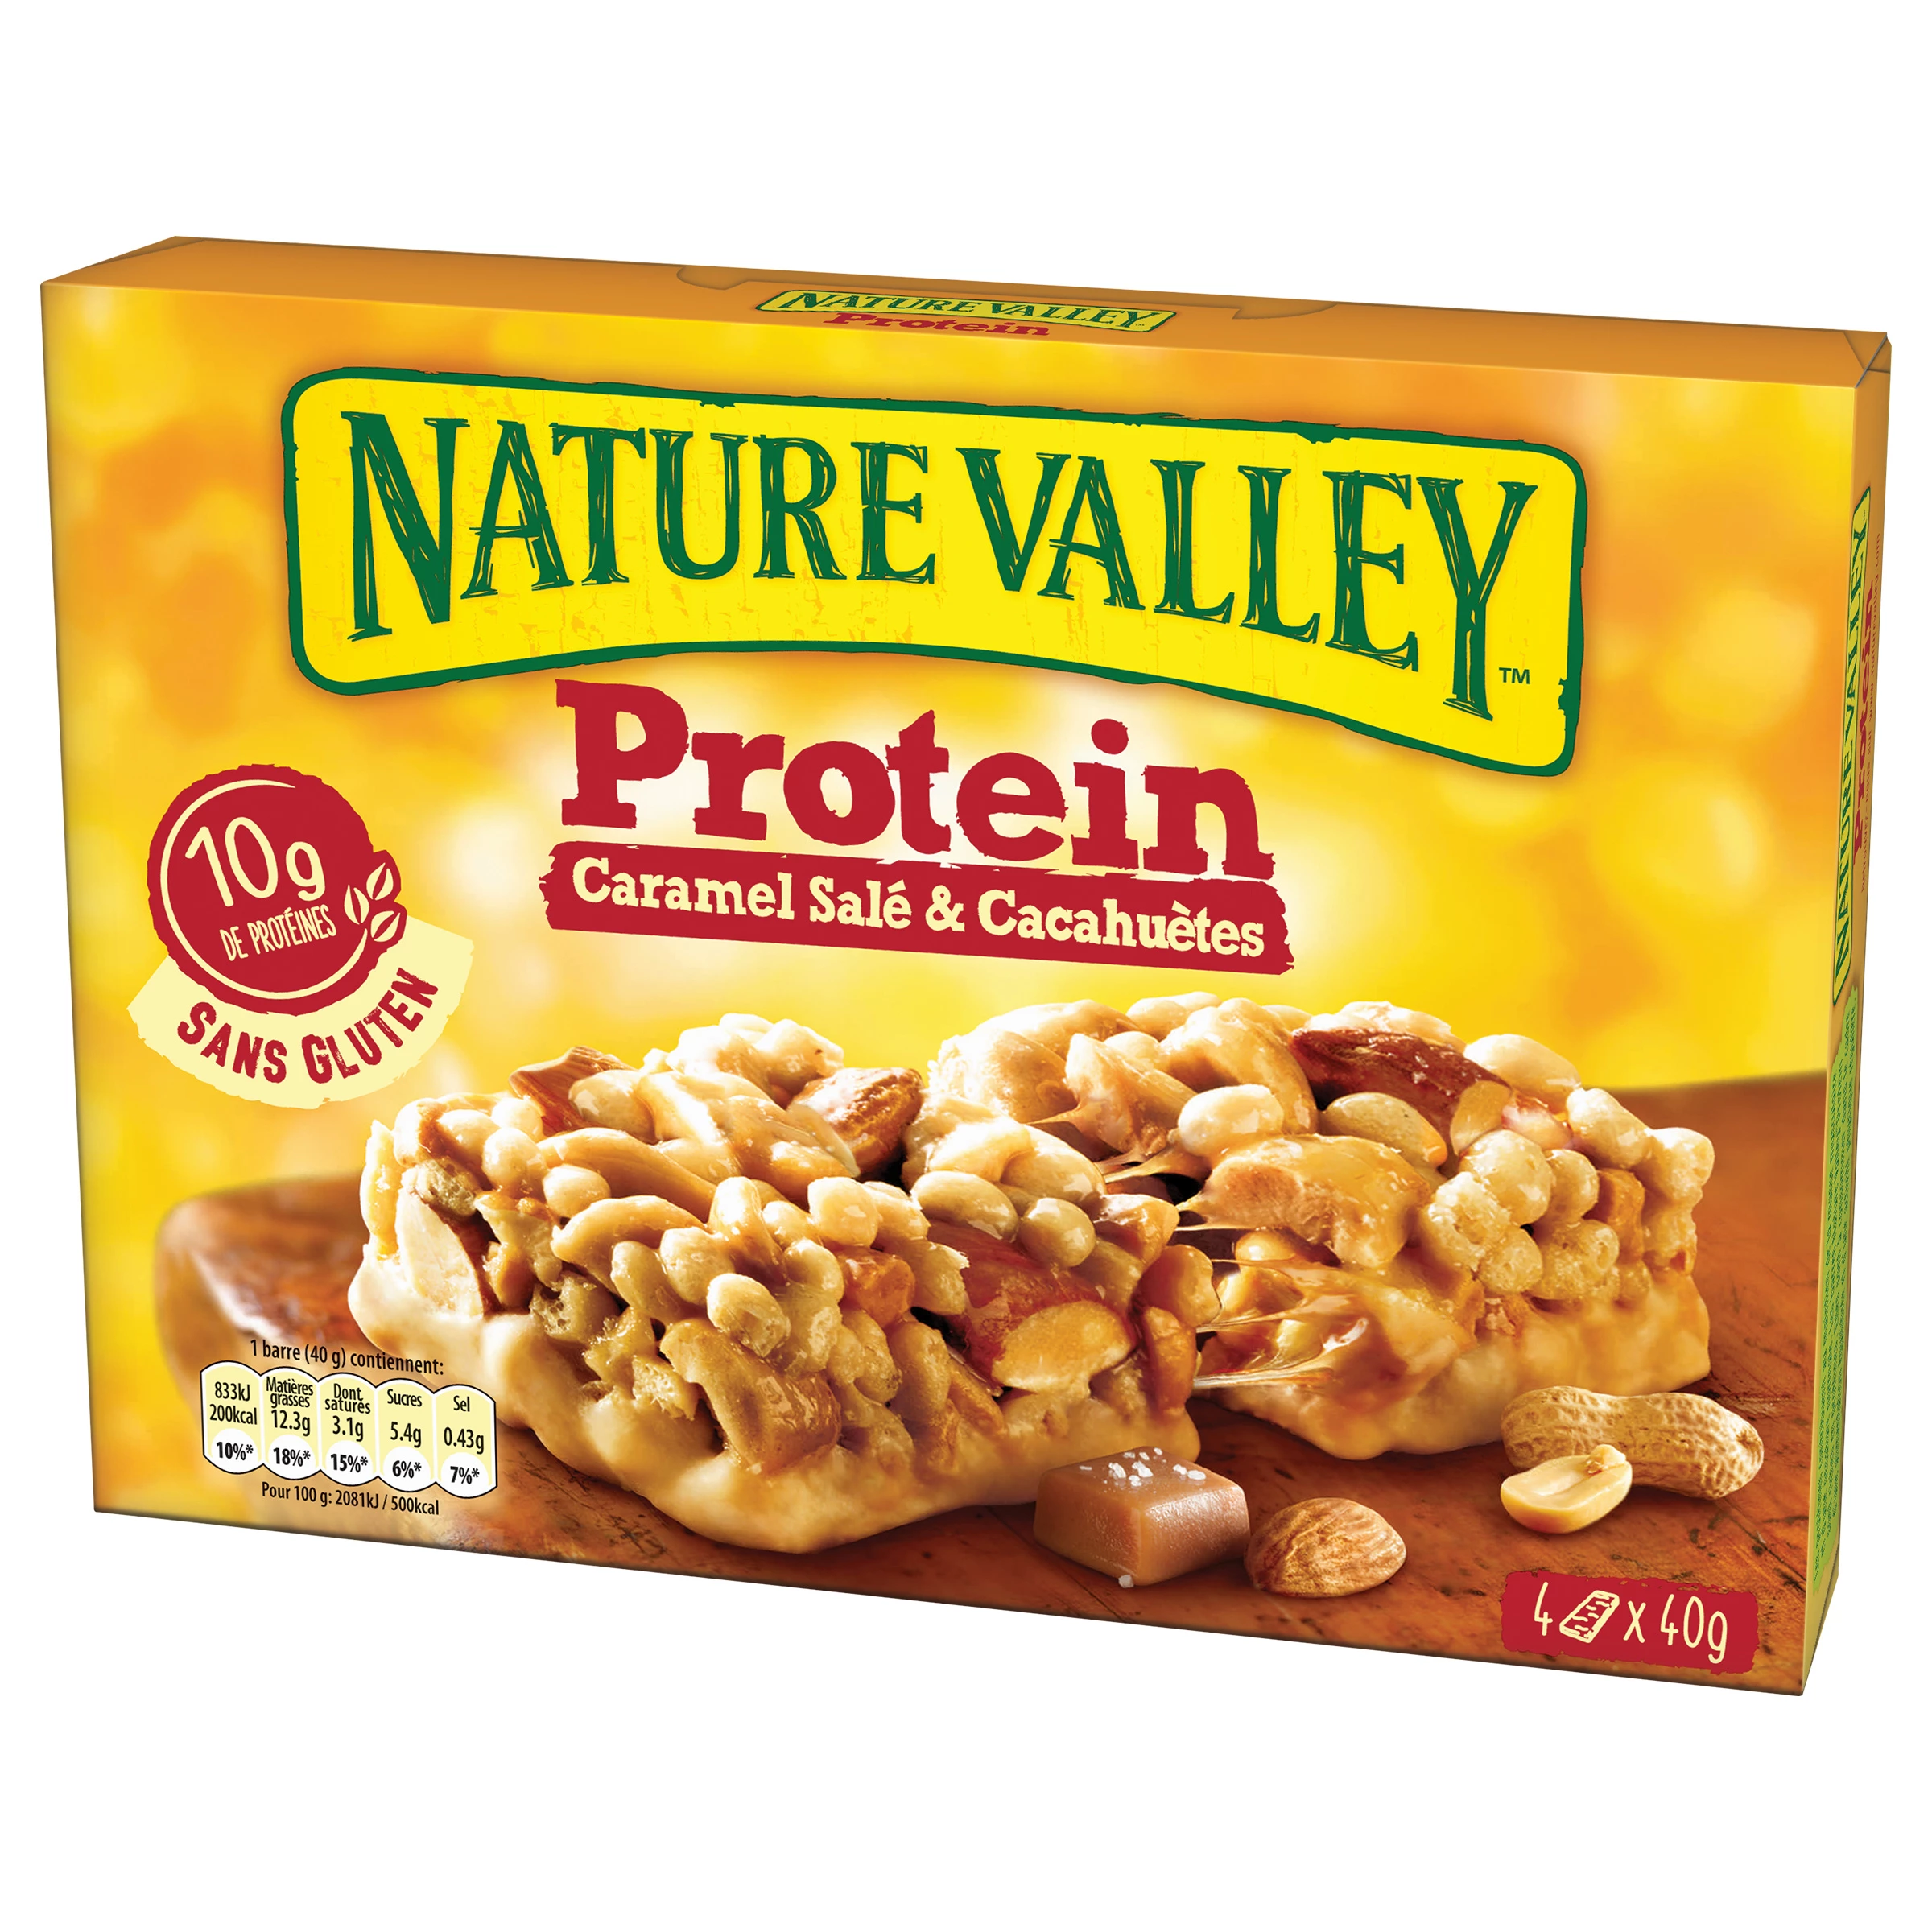 NATURE VALLEY Protein barres de céréales fruits rouges et